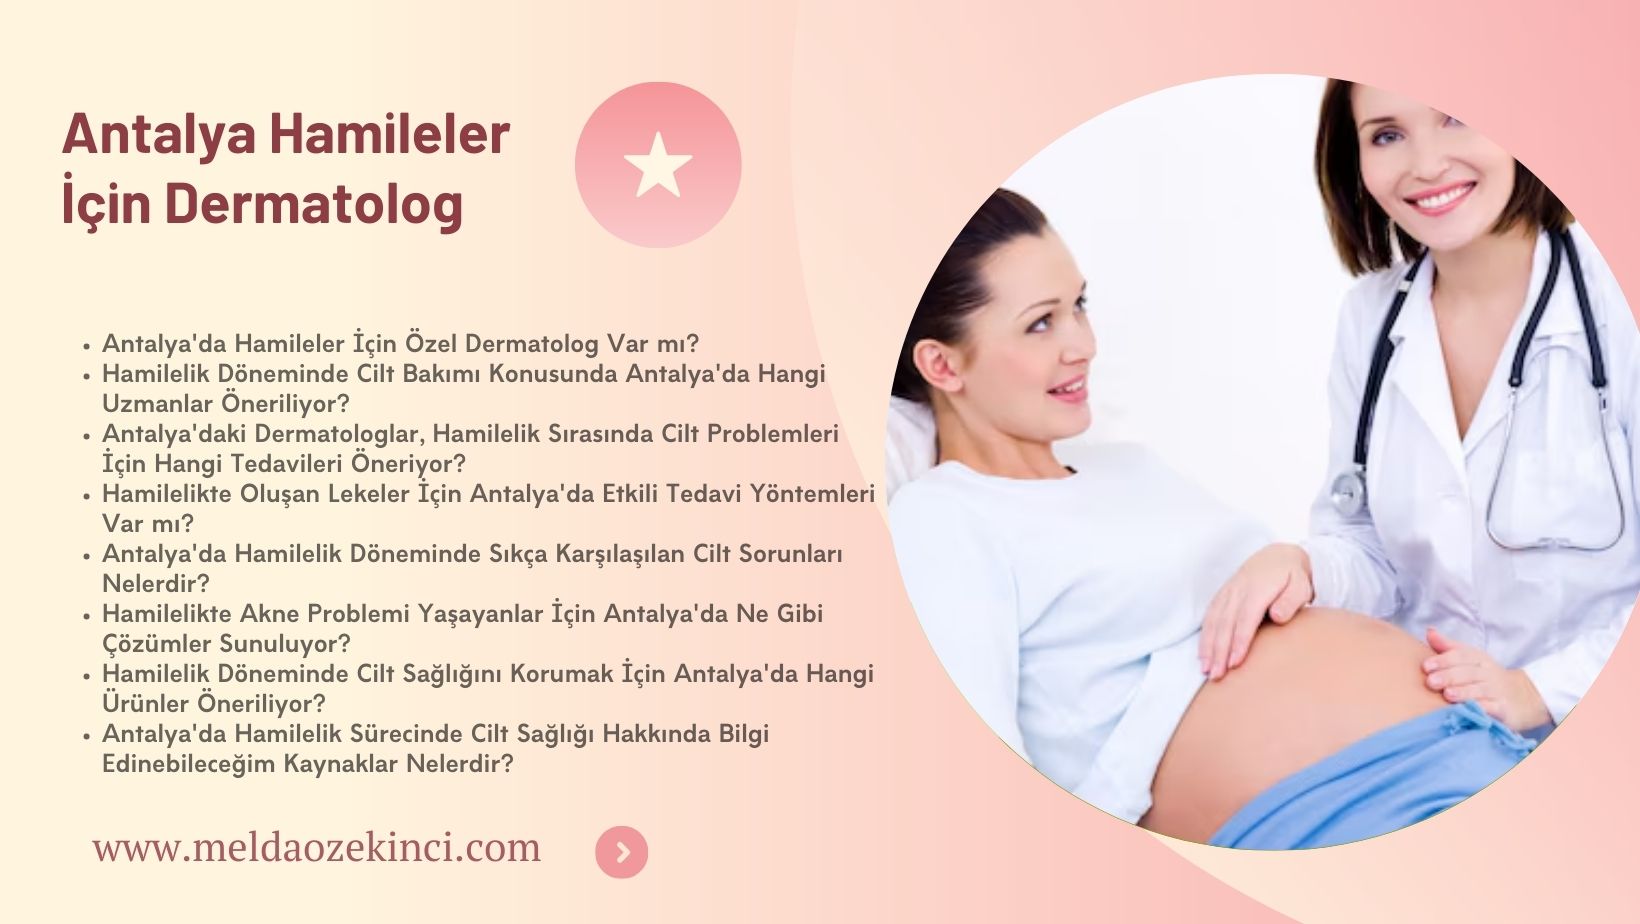 Antalya Dermatologist for Pregnant Women